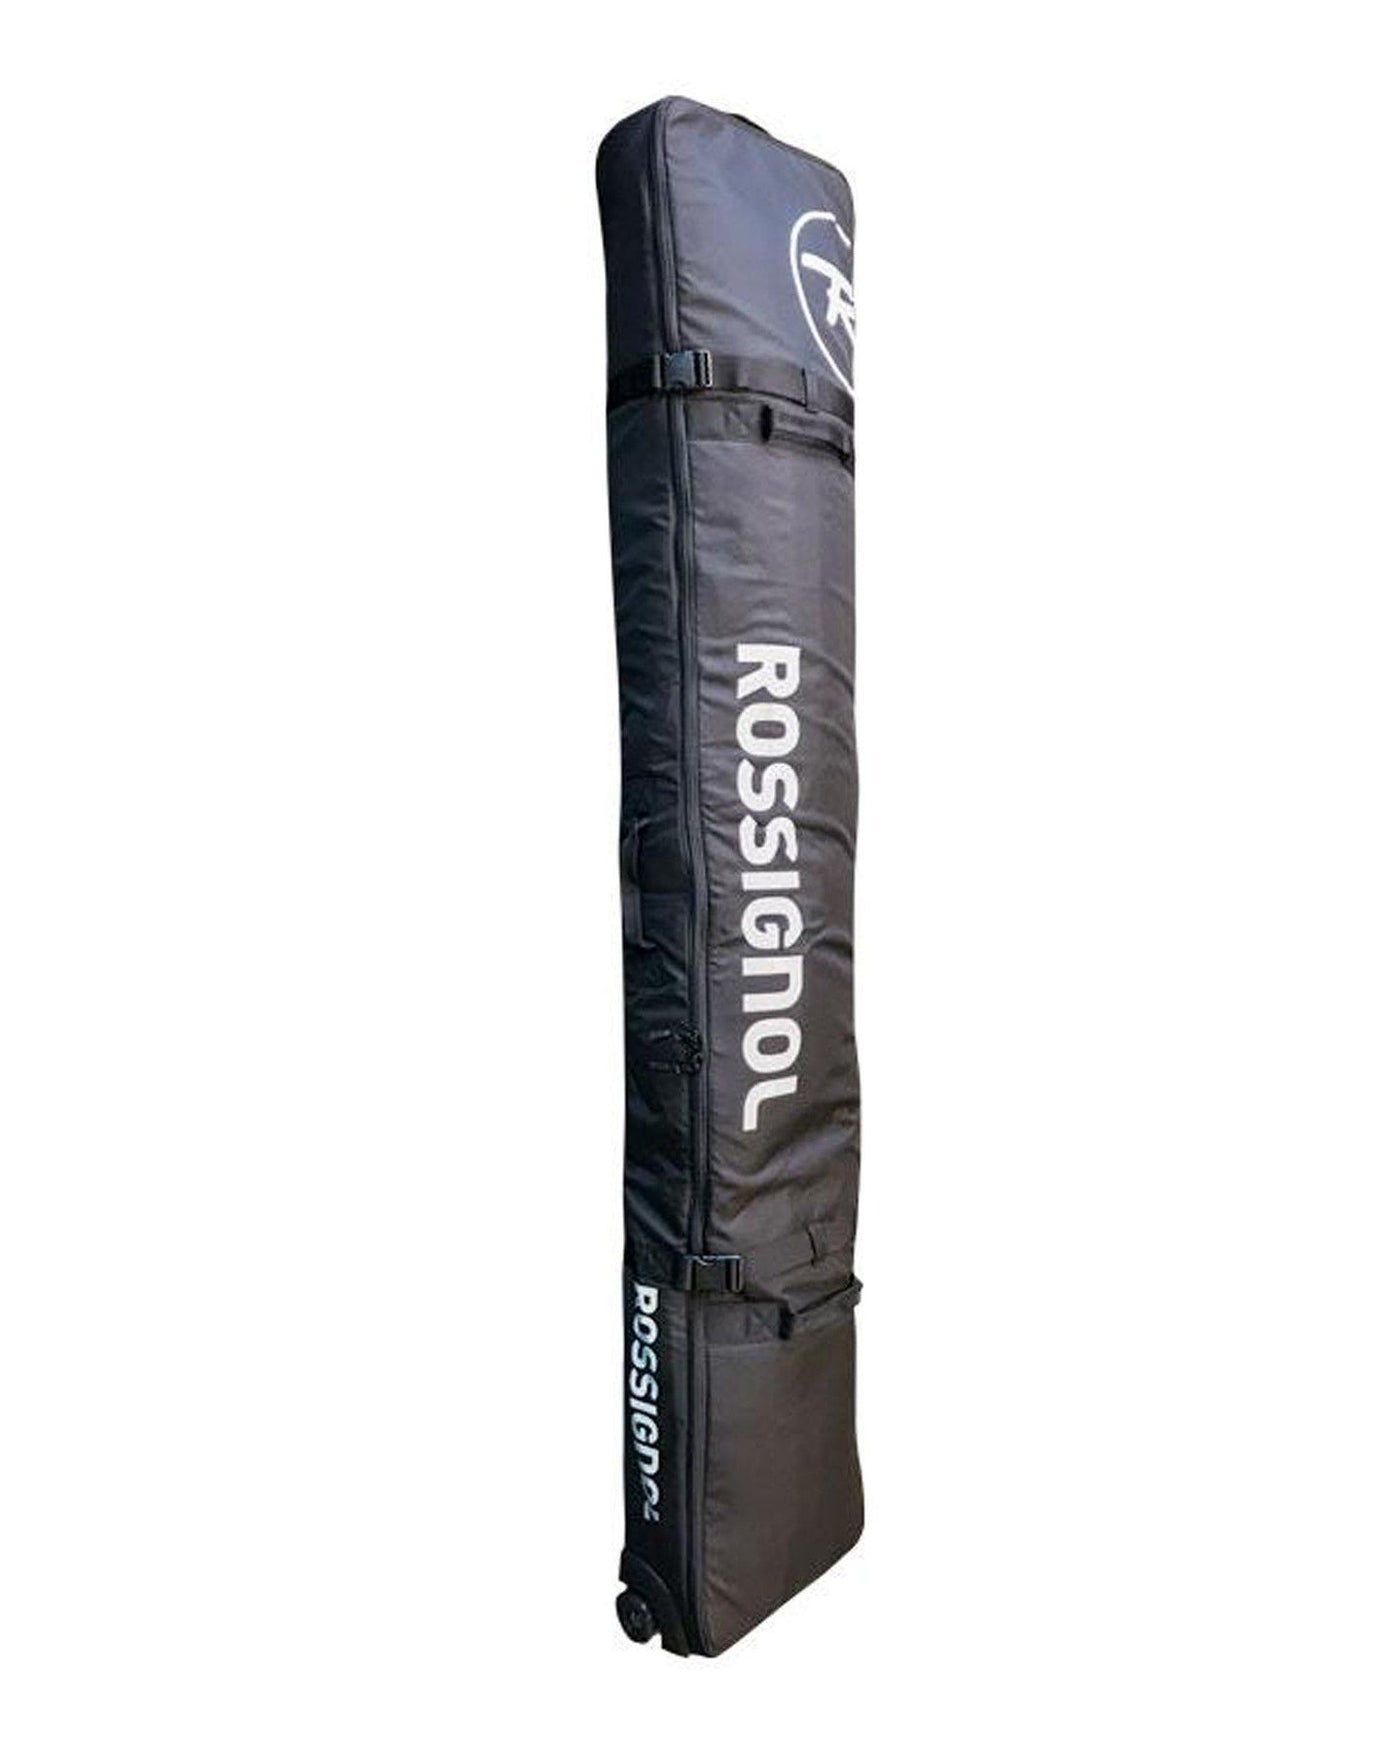 Snowboard Bag BLACK OPS Wheelie Bag 170cm Upto 3 Boards.